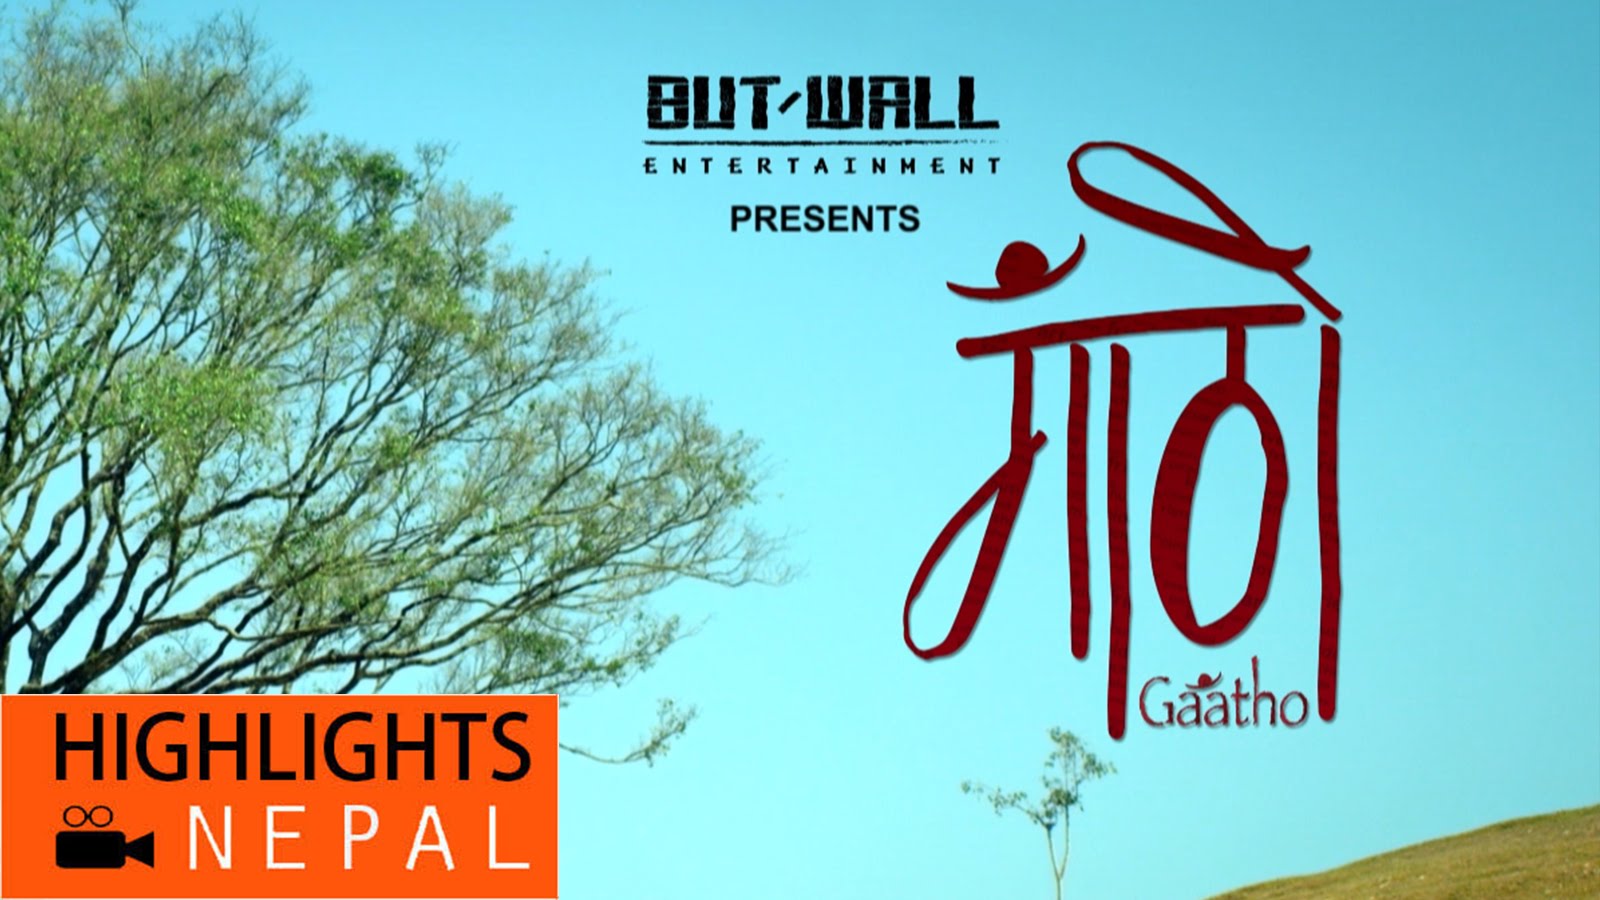 नेपाली चलचित्र “गाठो” हेर्नुहोस !! (भिडियो)